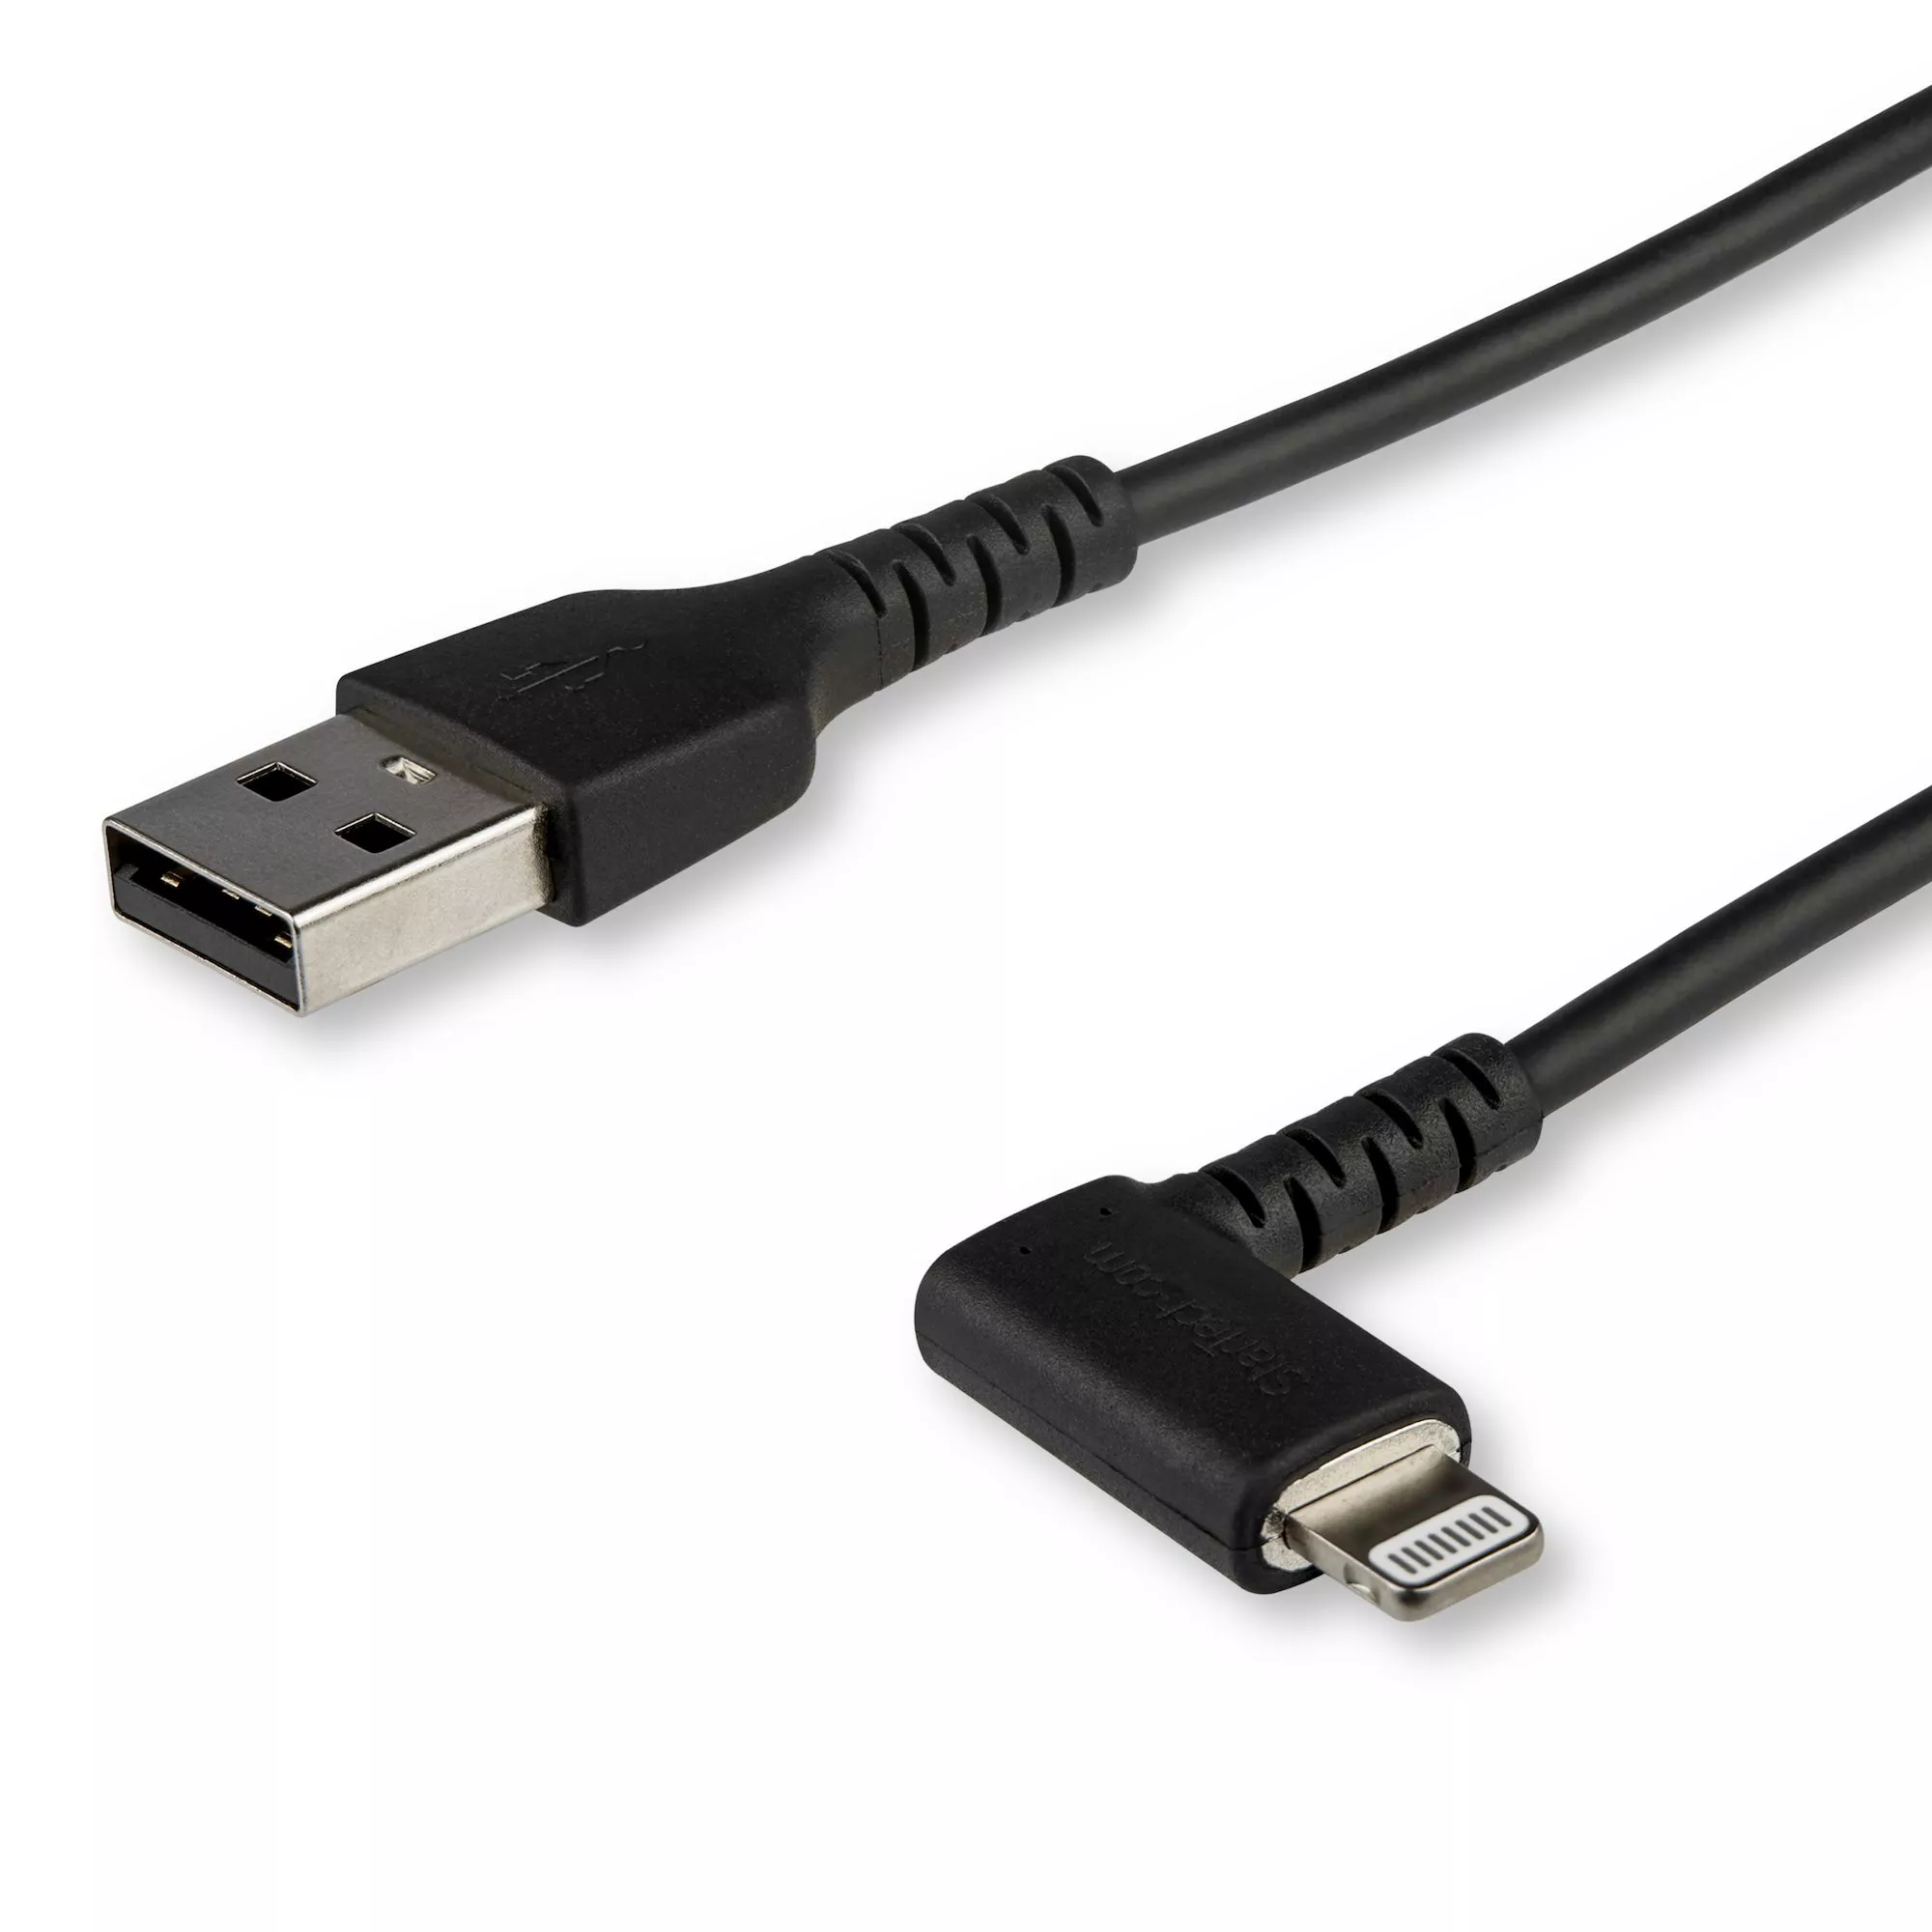 Achat StarTech.com Câble USB-A vers Lightning Noir Robuste 2m au meilleur prix